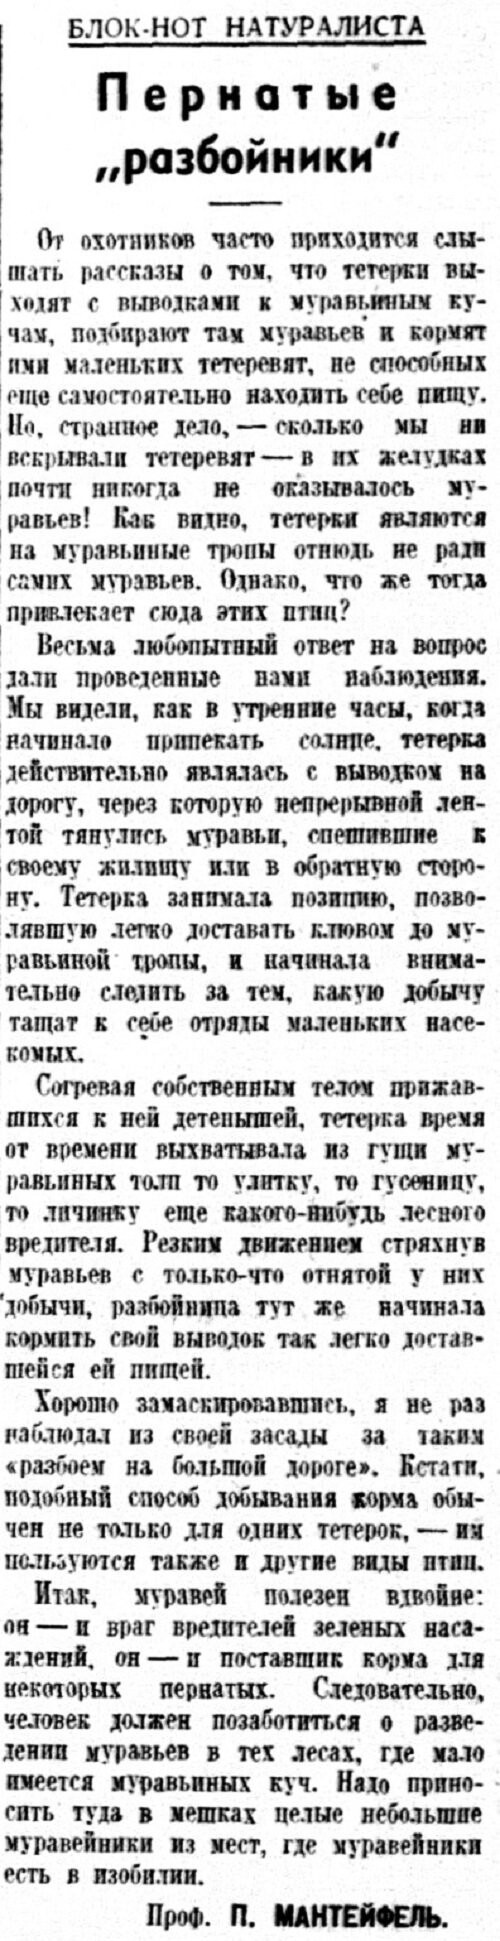 «Известия», 4 декабря 1939 г.